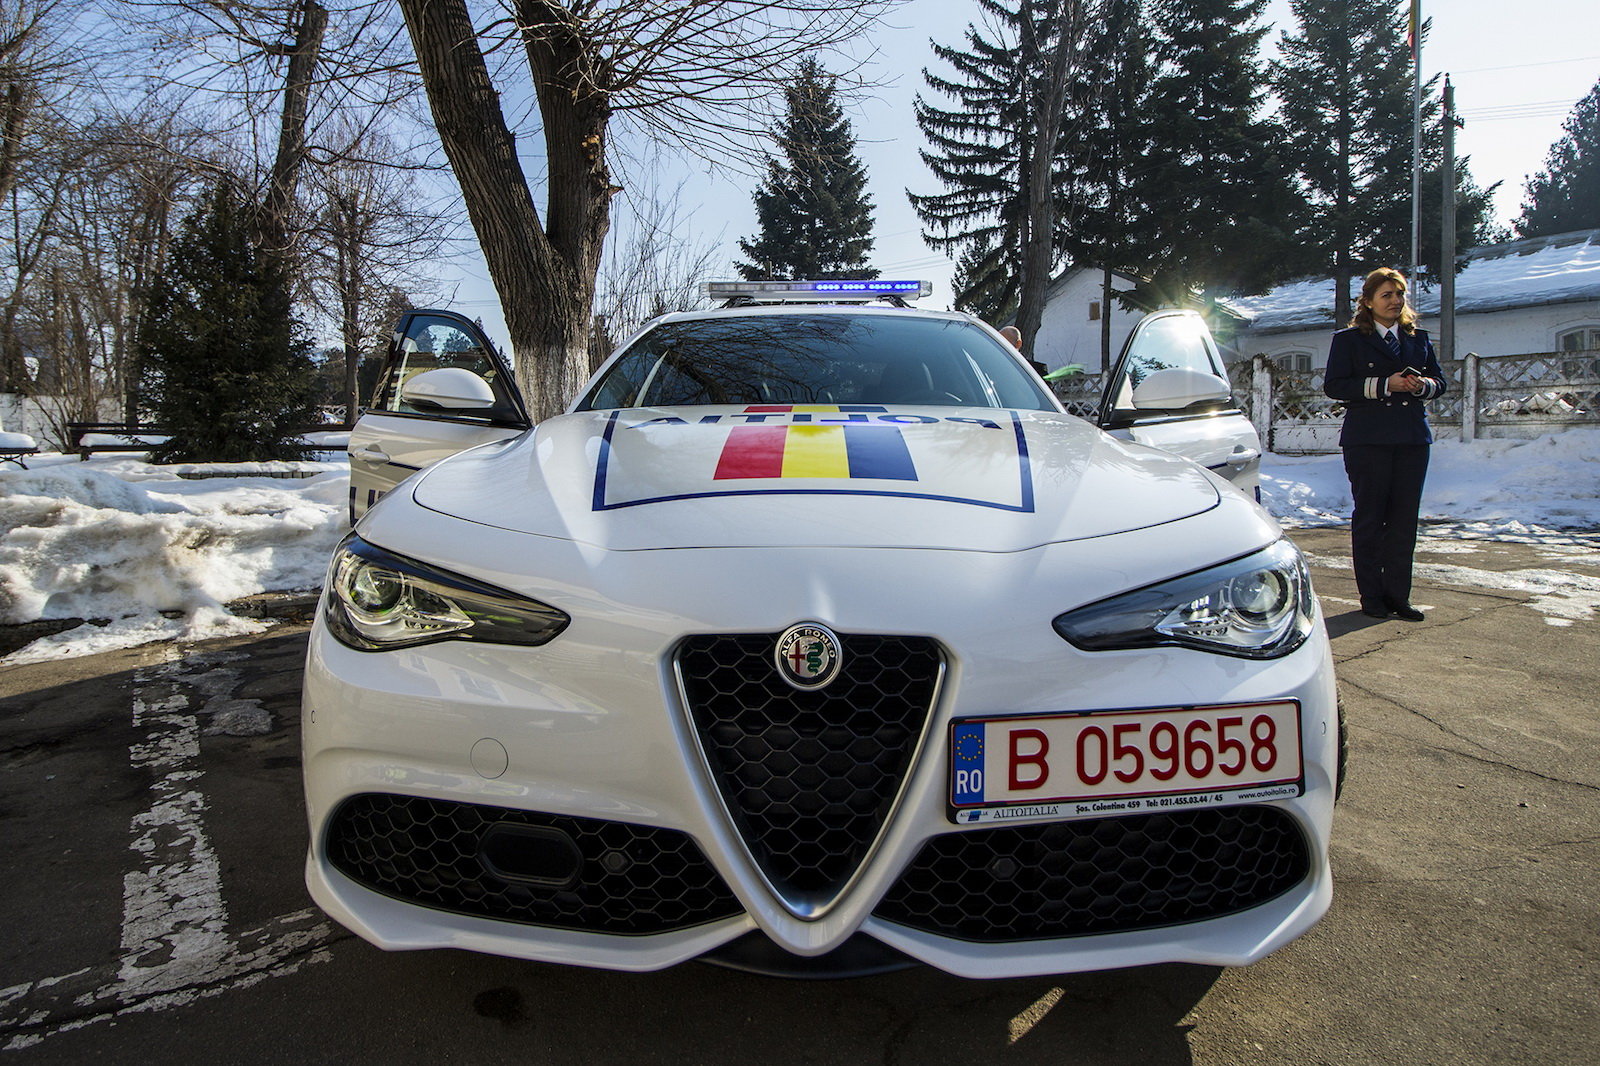 Rumunská policie dostala Alfy Romeo Giulia Veloce